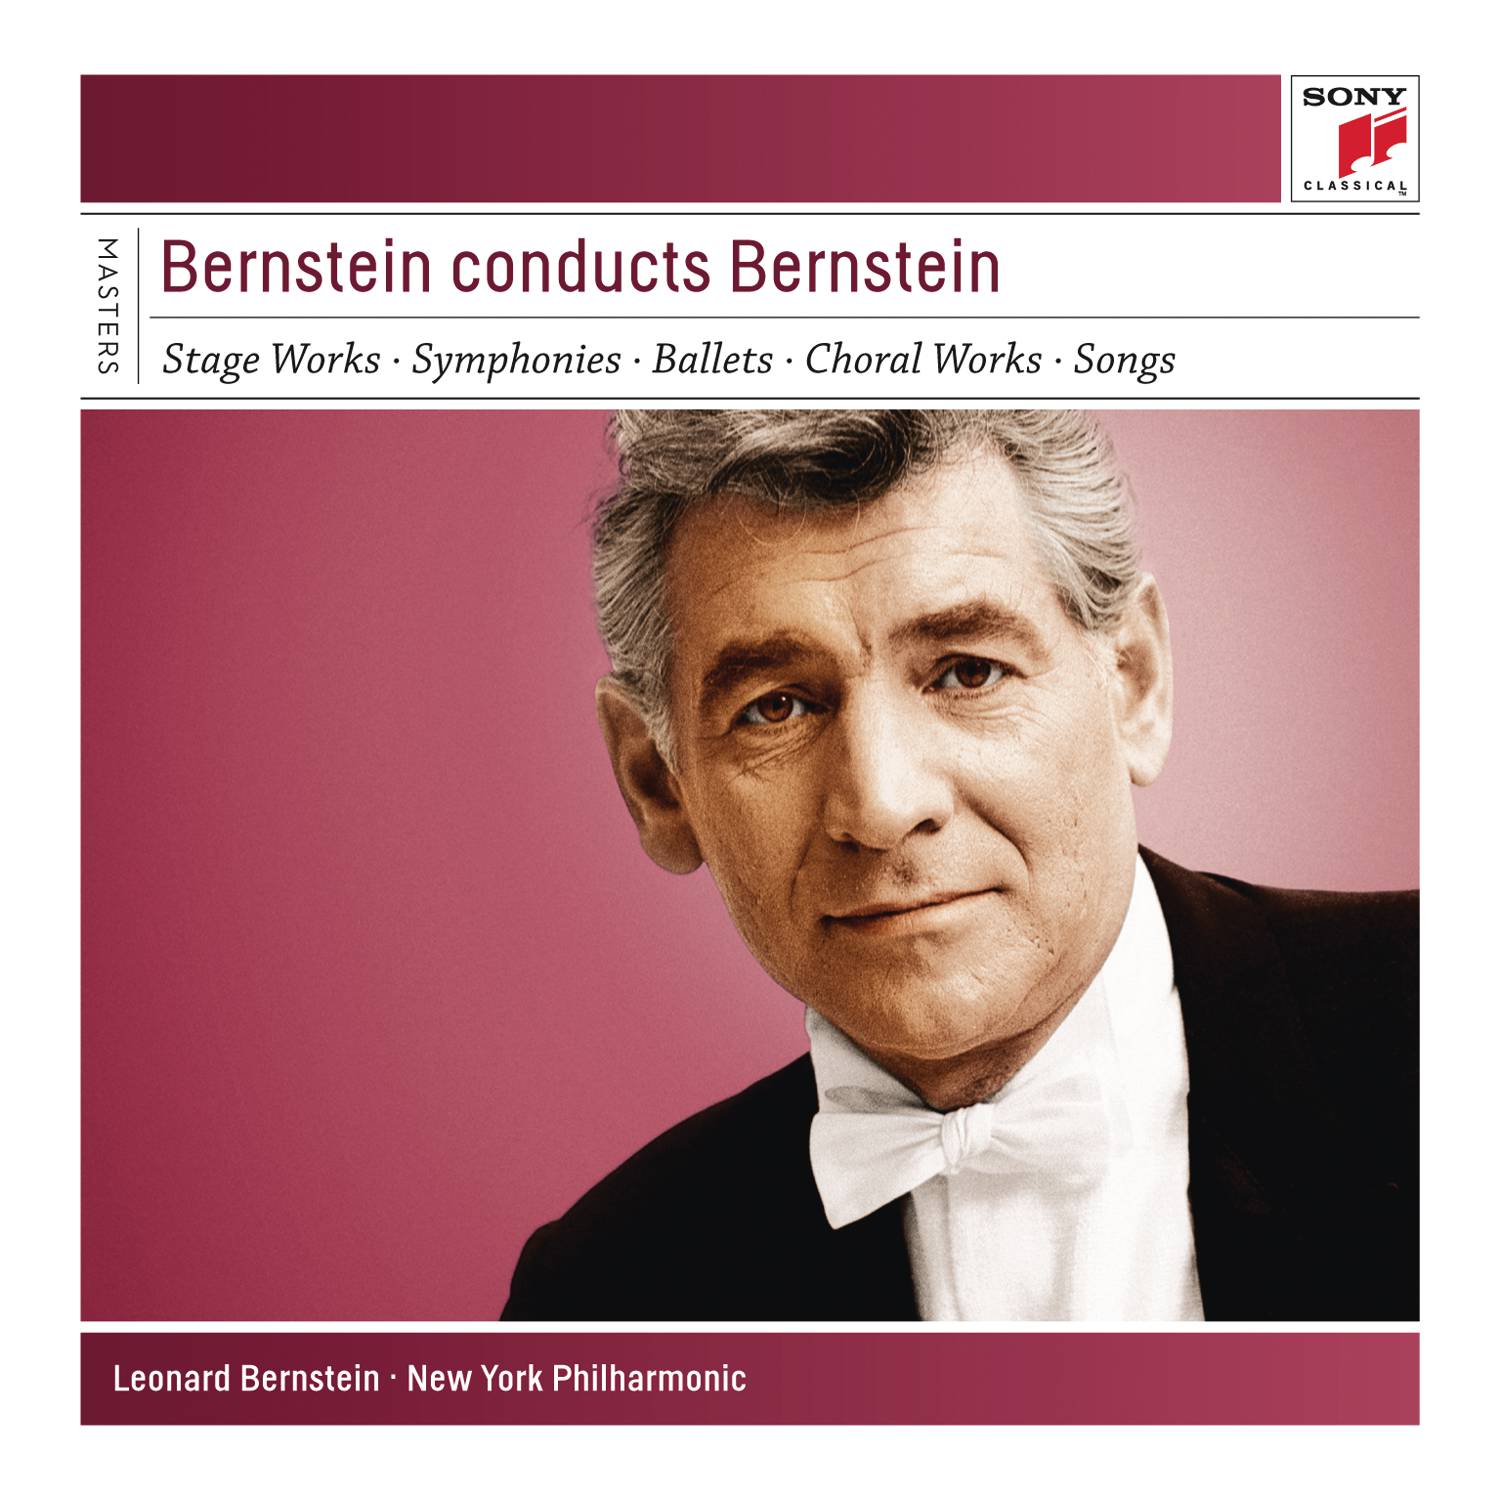 Leonard Bernstein conducts Bernstein